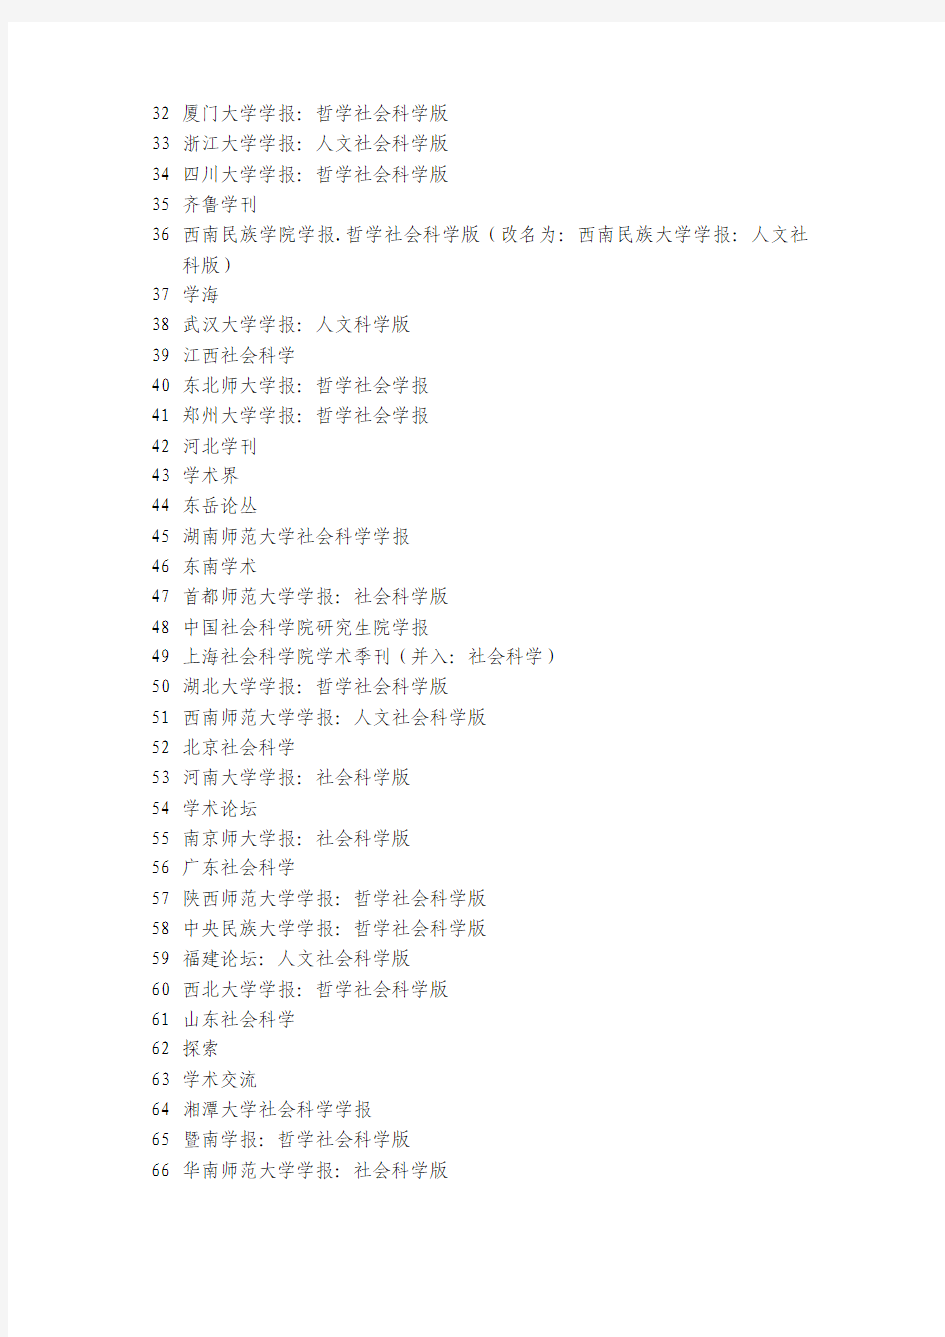 《中文核心期刊要目总览》(2004年北京大学版)分类表